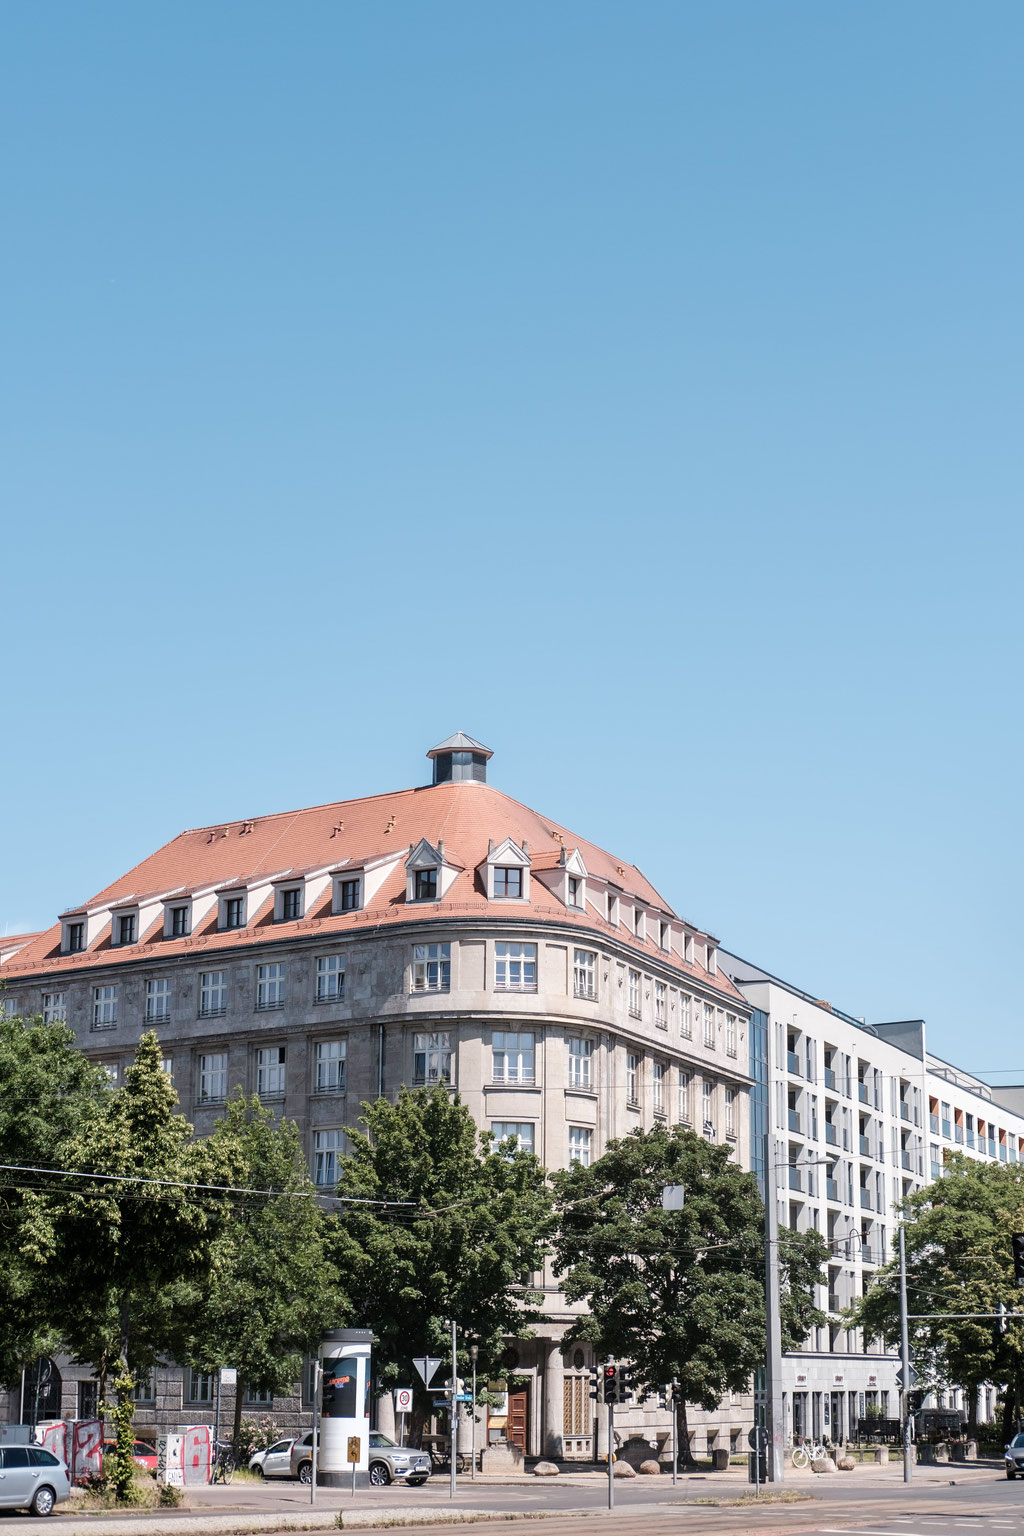 Leipziger Straßenszene mit schönem Altbau und blauem Himmel.